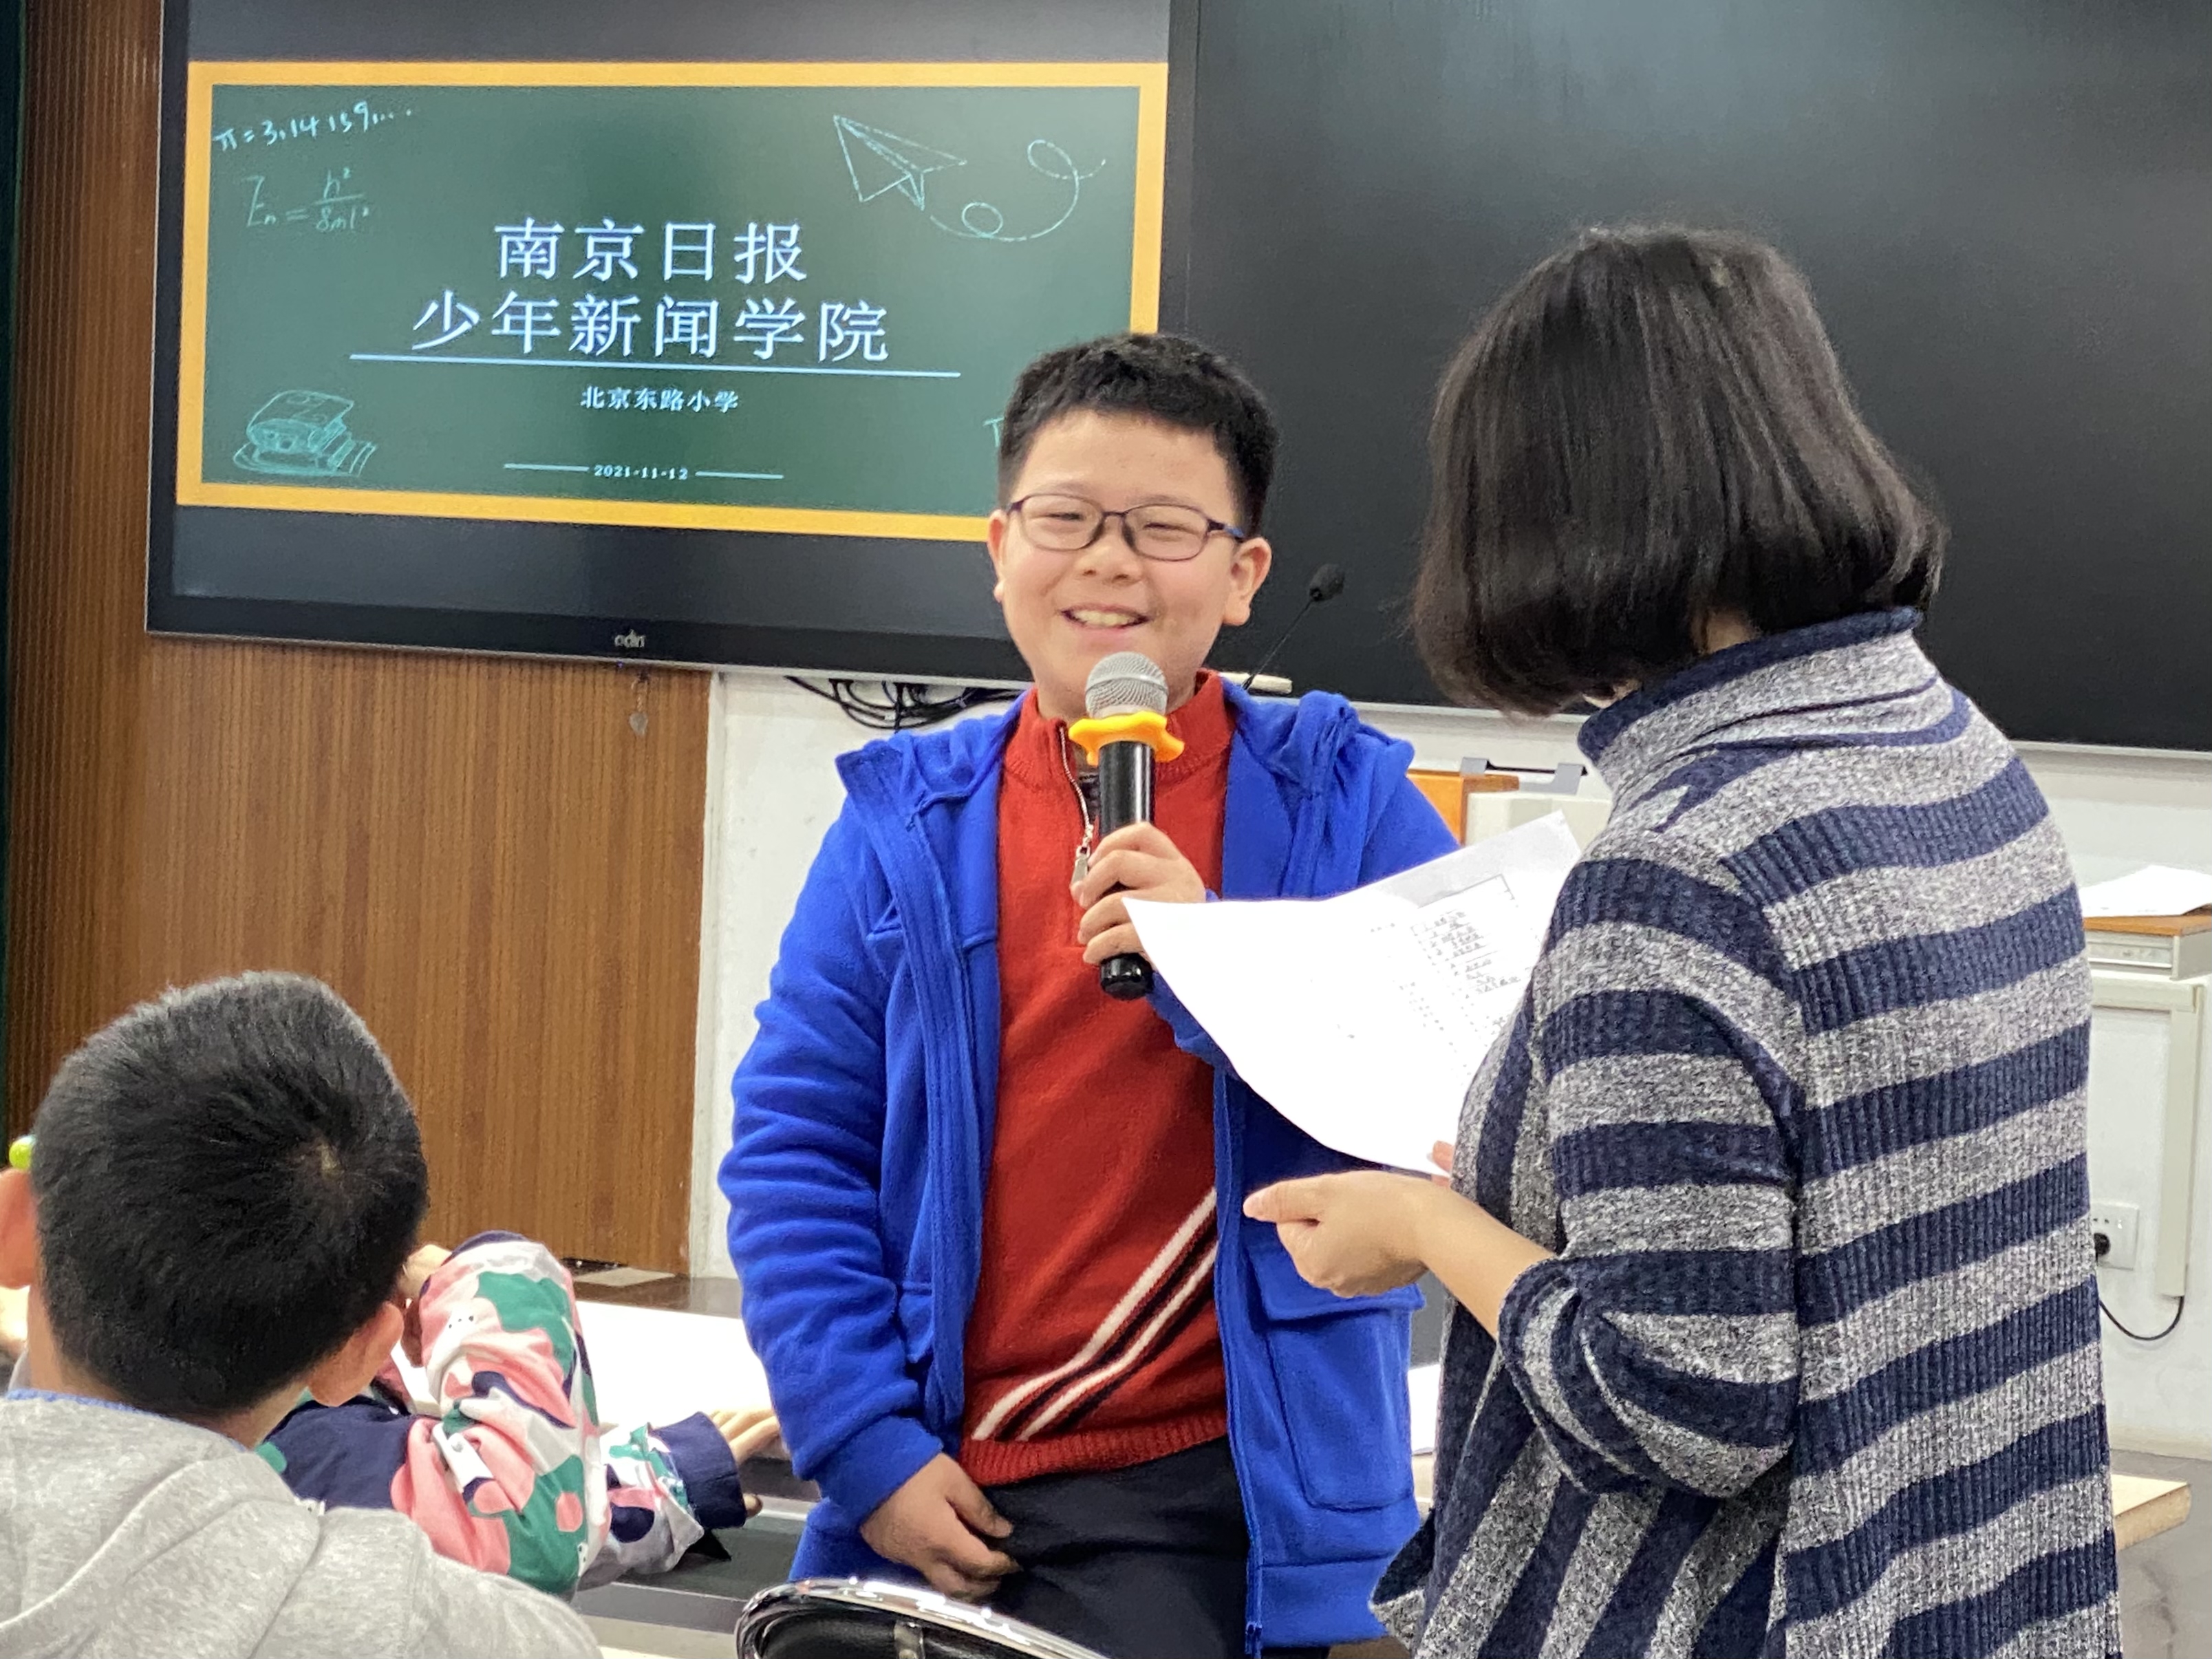        南京日报少年新闻学院在北京东路小学招募学员